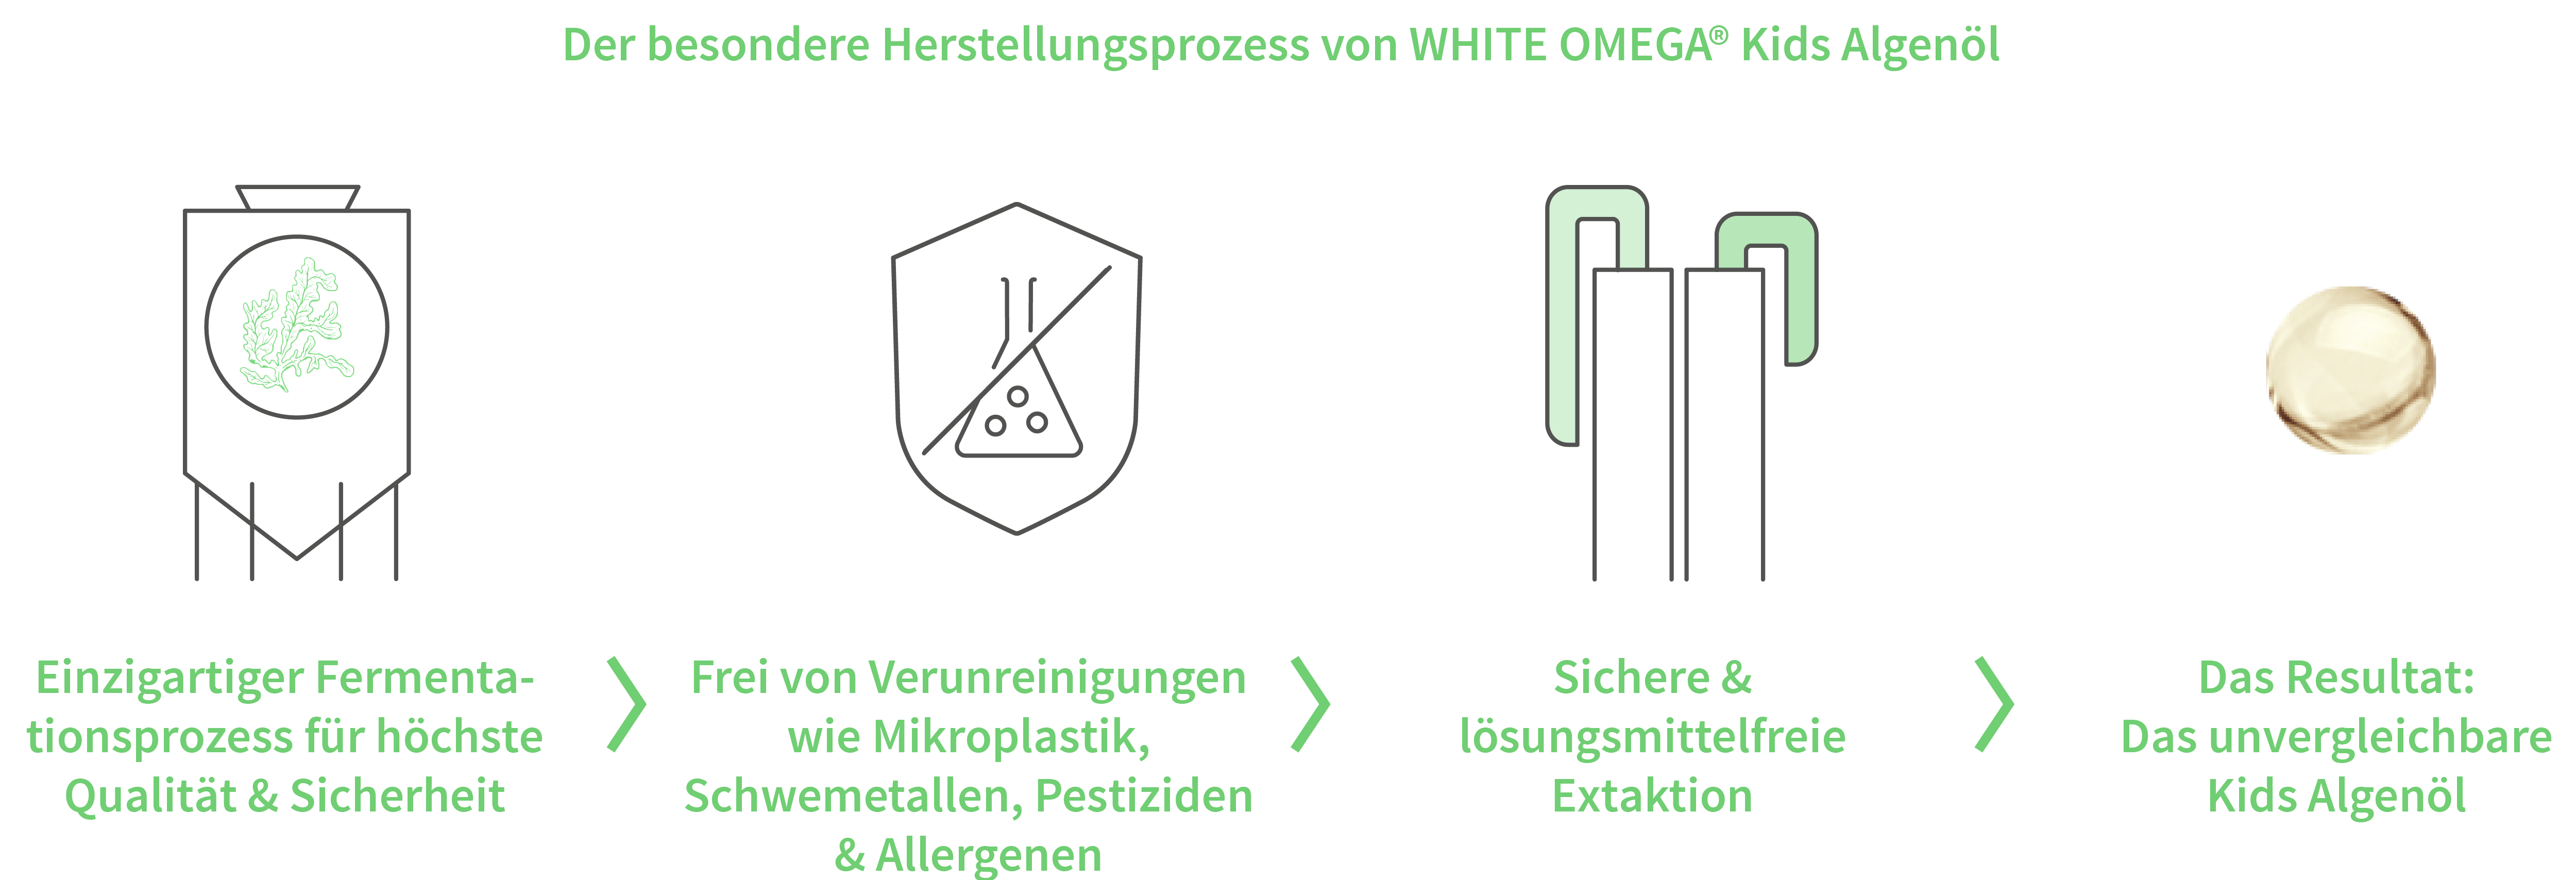 Diagramm: Totox-Wert von White Omega